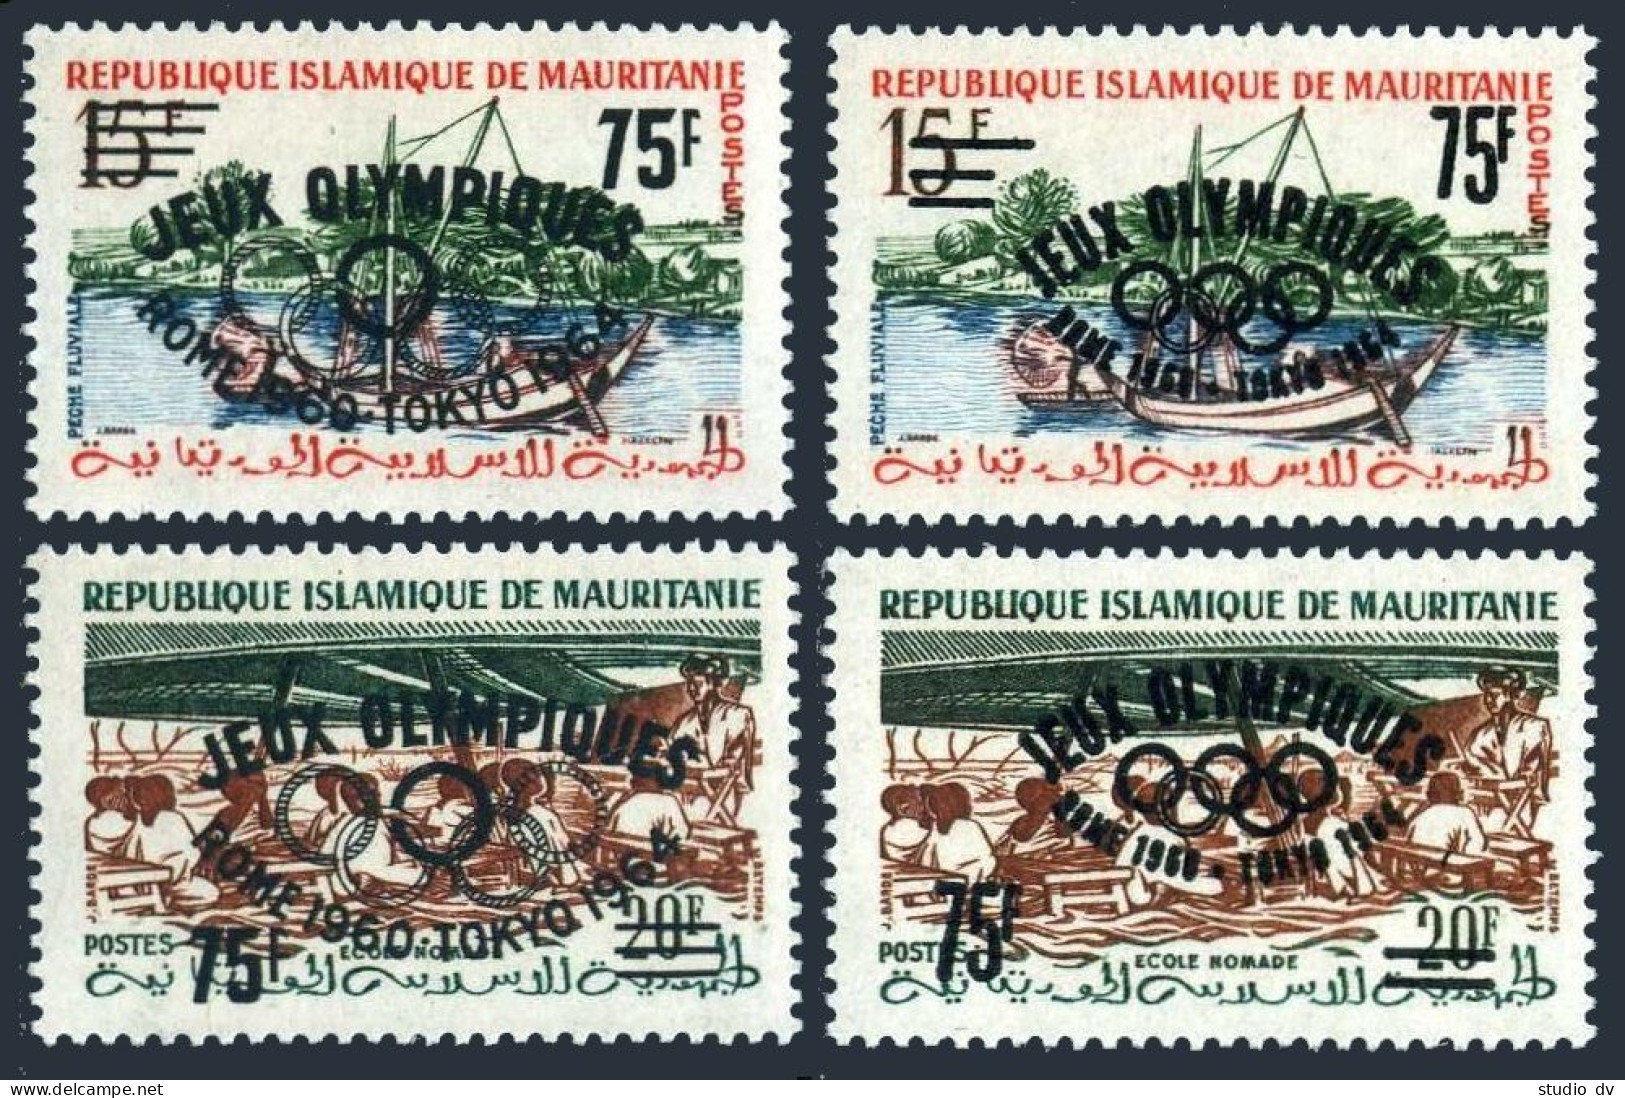 Mauritania 126-127 Var Type 1-2,MNH.Michel I-II Type I,II. Olympics Rome-1960. - Mauritania (1960-...)